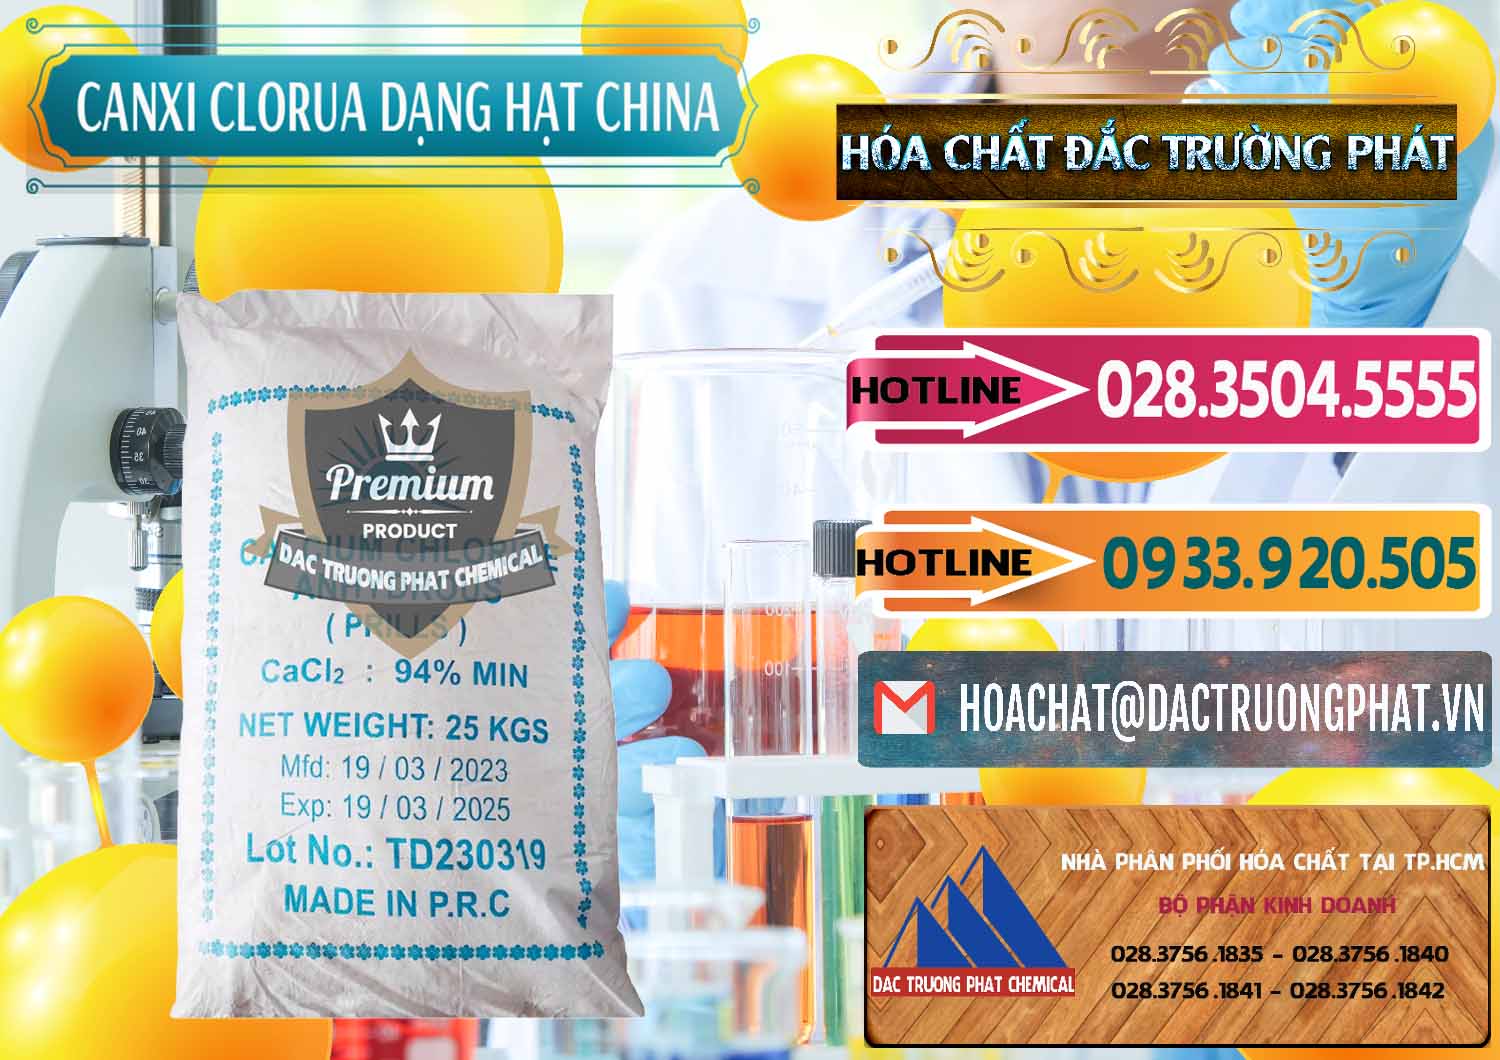 Cty bán - cung ứng CaCl2 – Canxi Clorua 94% Dạng Hạt Trung Quốc China - 0373 - Kinh doanh - cung cấp hóa chất tại TP.HCM - dactruongphat.vn